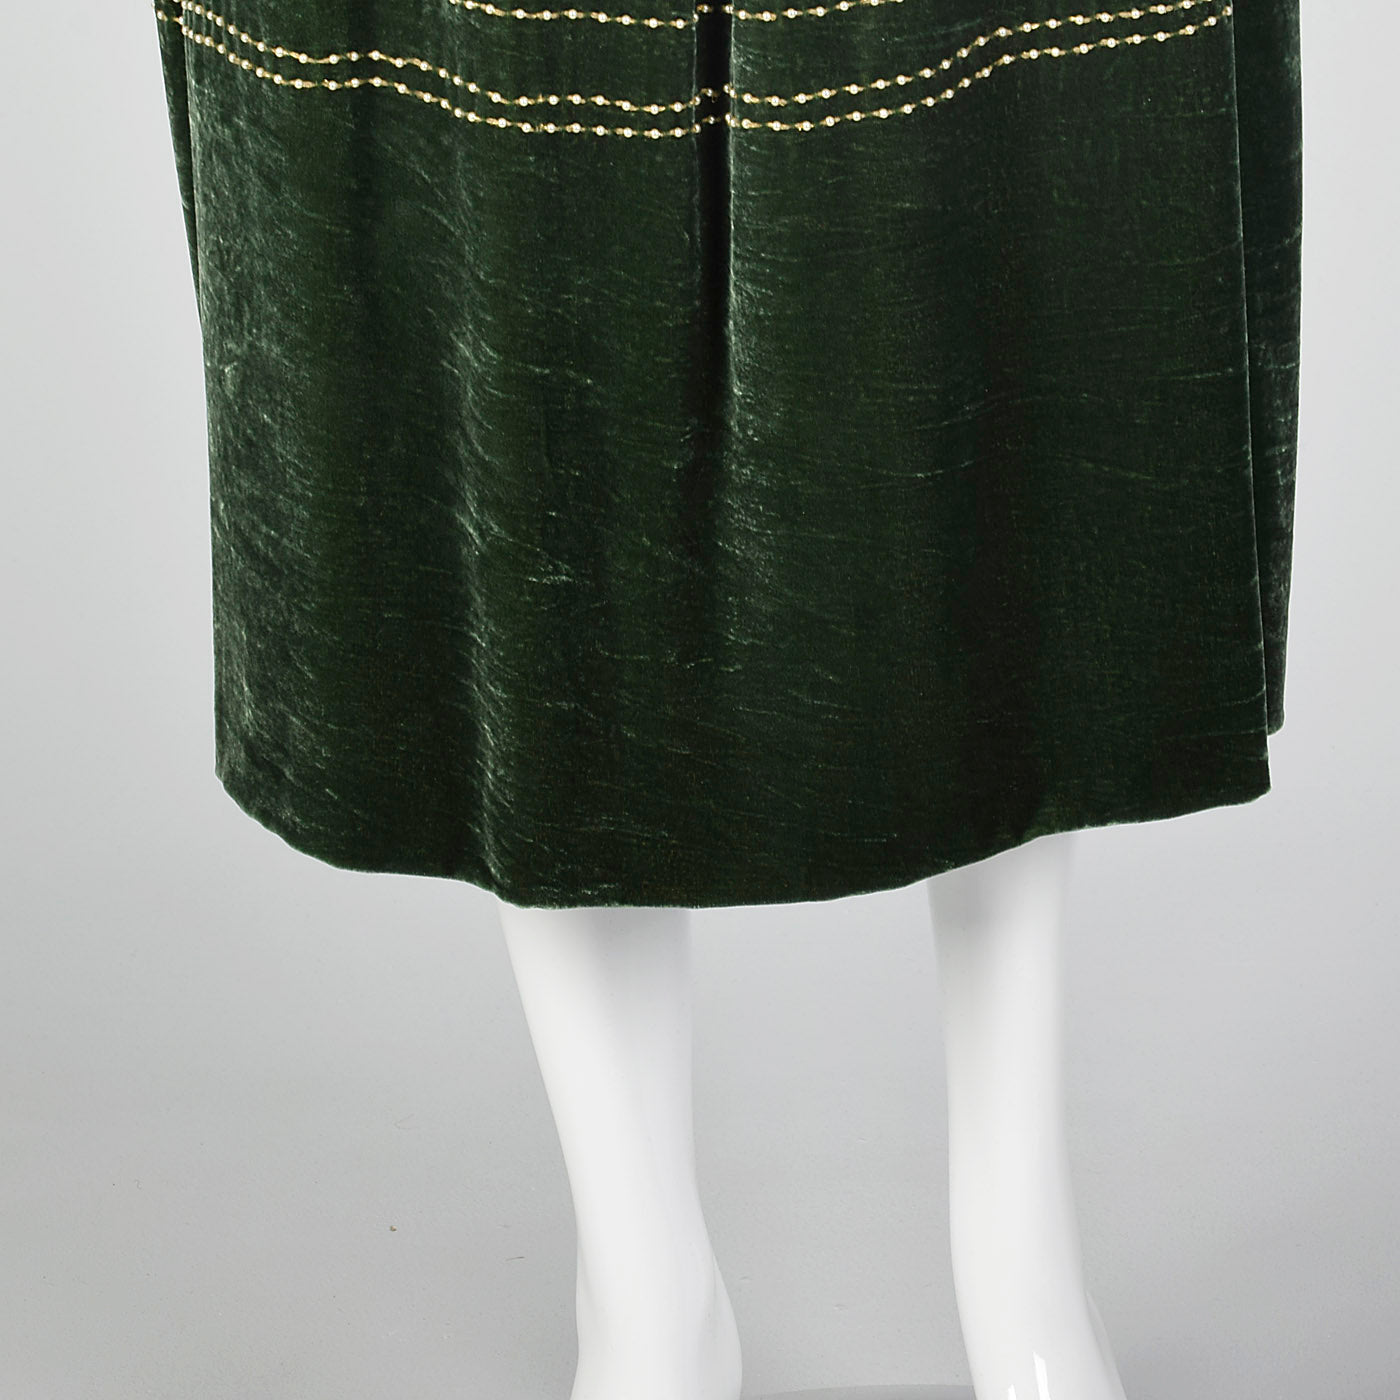 1990s Green Velvet Skirt with Beads